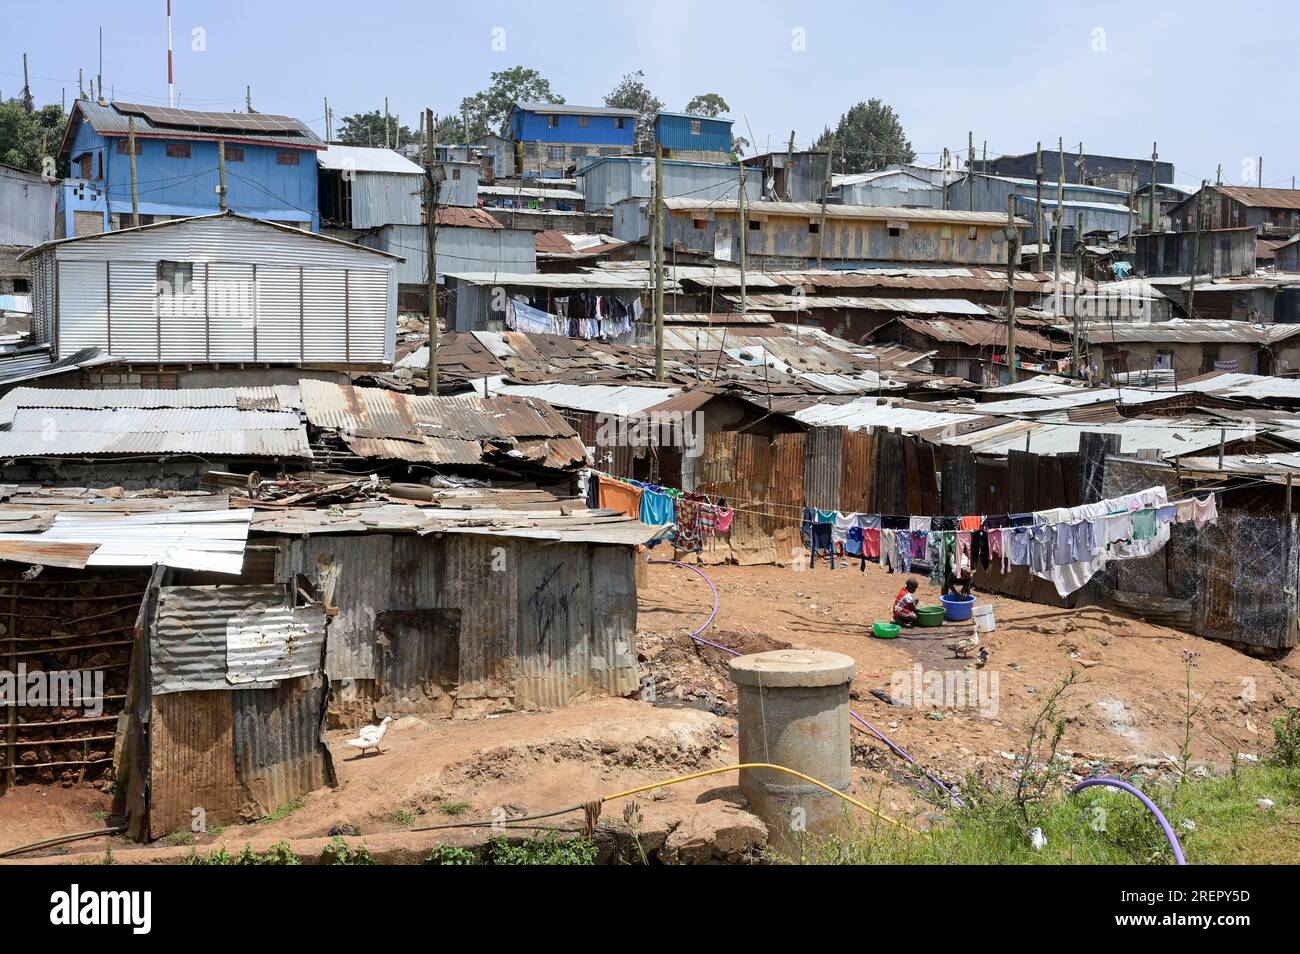 KENYA, Nairobi, Kibera slum / KENIA, Nairobi, Slum Kibera Stock Photo